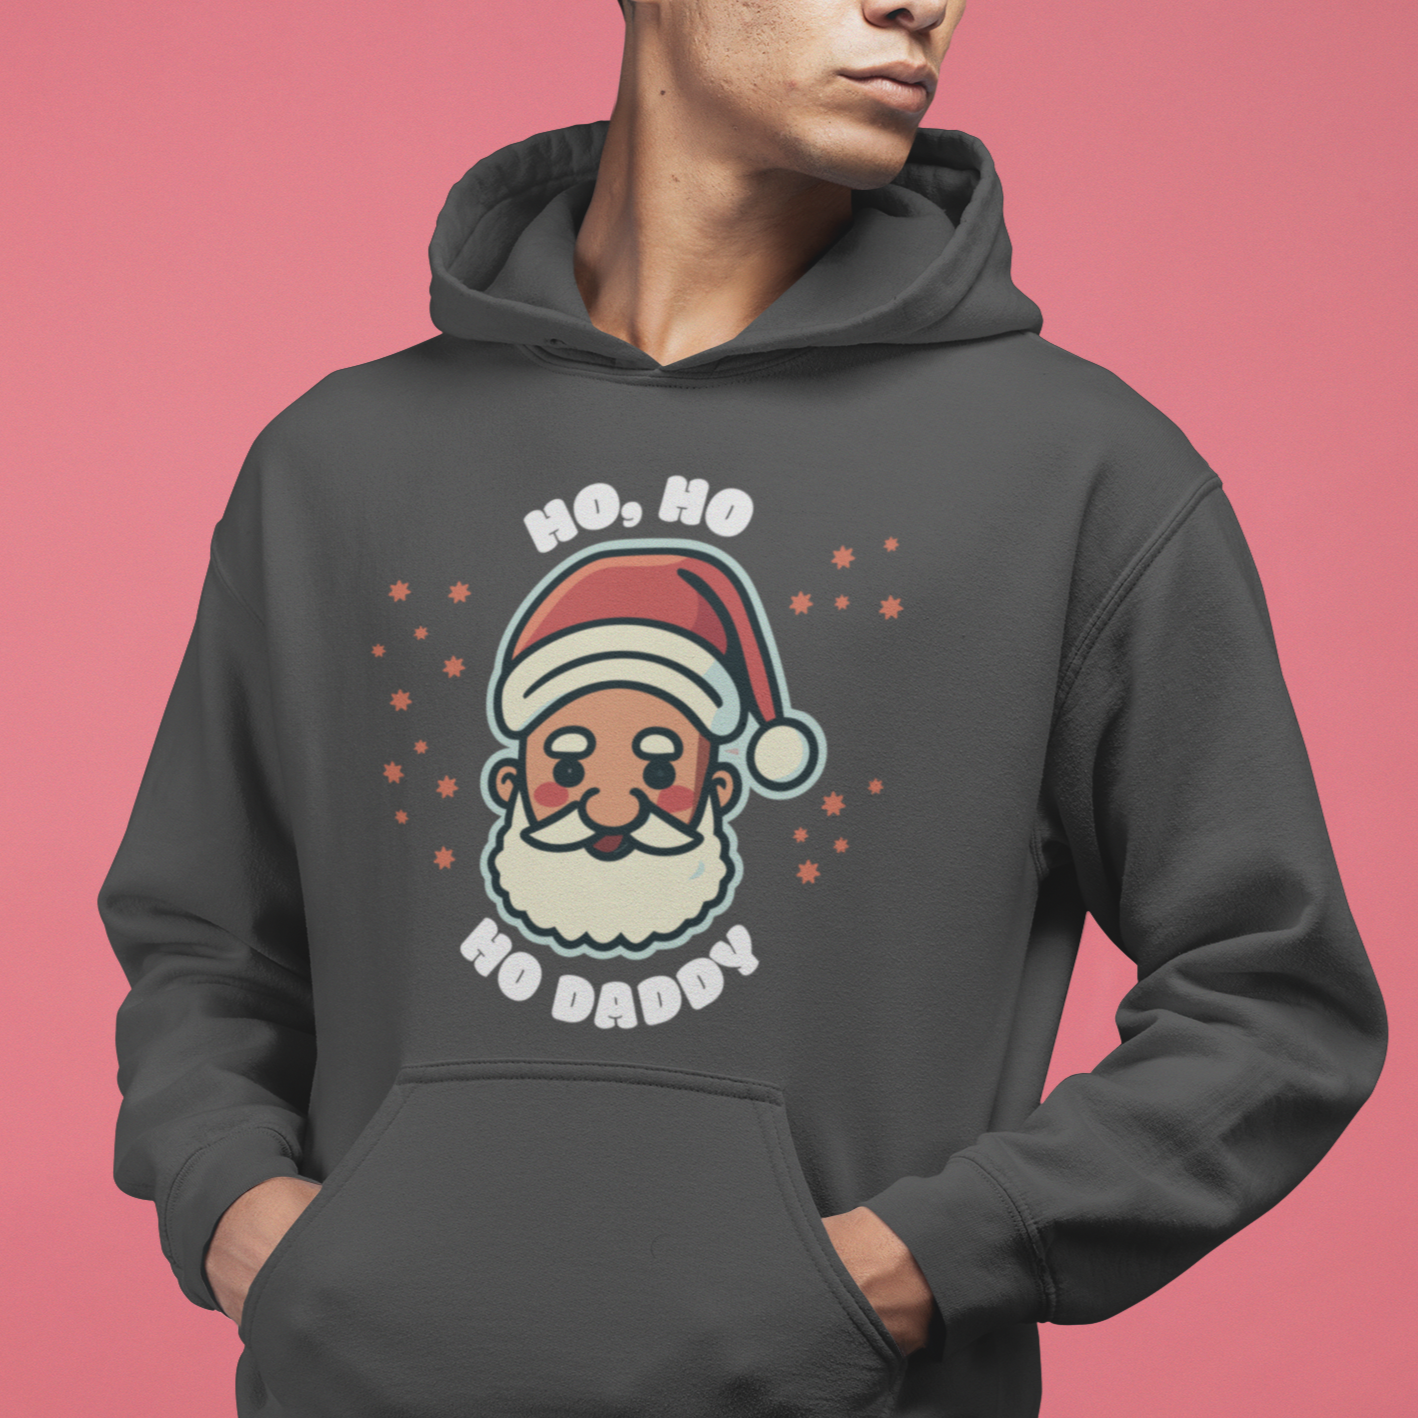 Ho, Ho, Ho Daddy - Men's NUBLEND® Hooded Sweatshirt